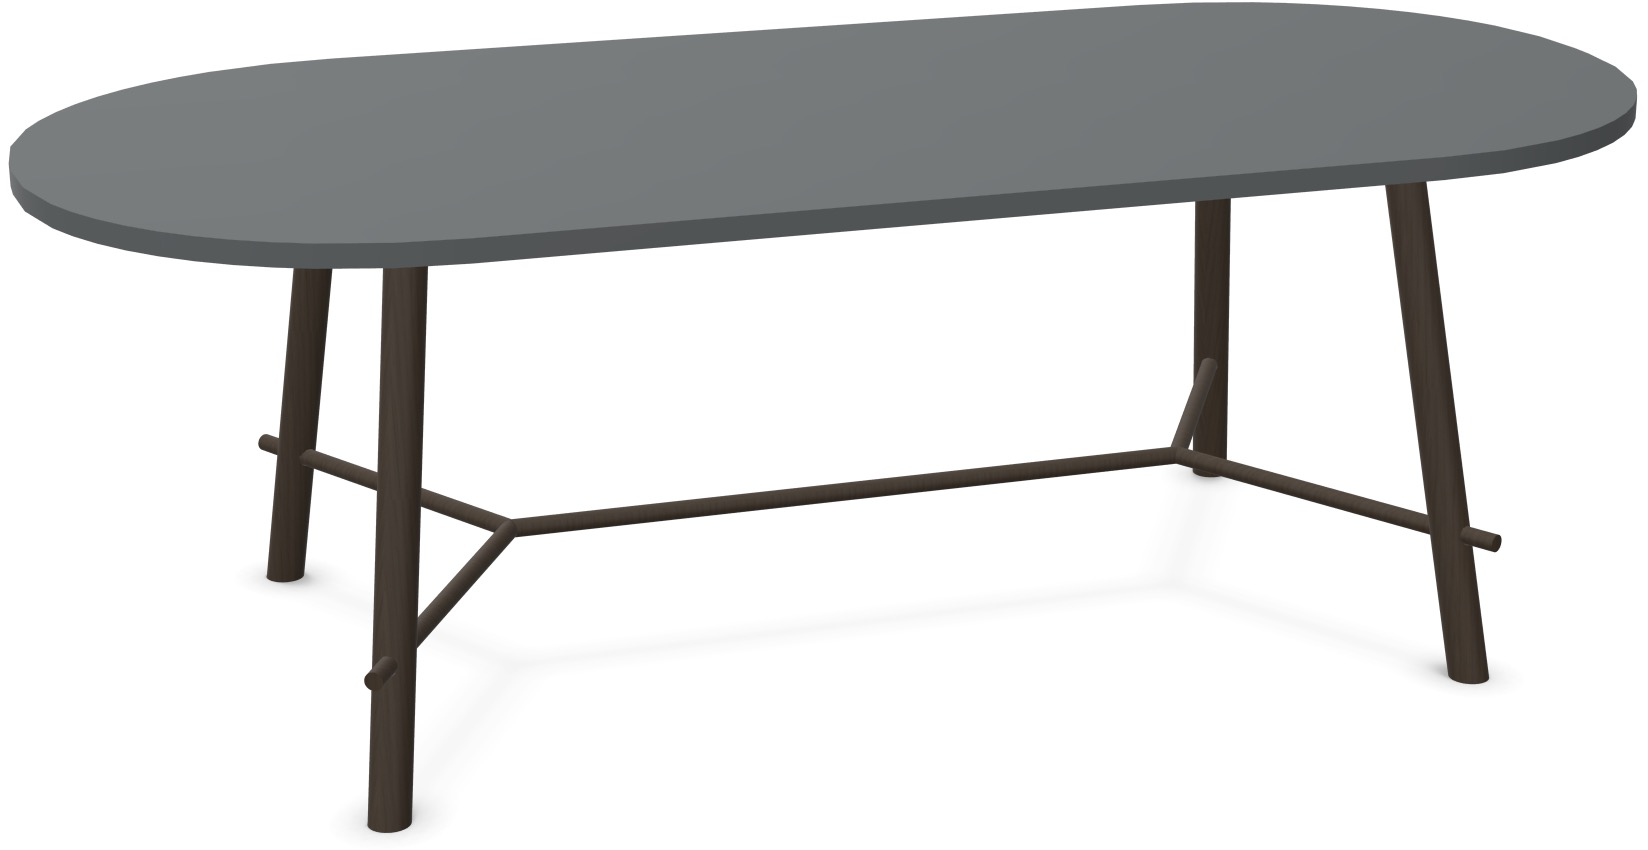 Record Living Tisch in Anthrazit / Eiche schwarz präsentiert im Onlineshop von KAQTU Design AG. Esstisch ist von Infiniti Design